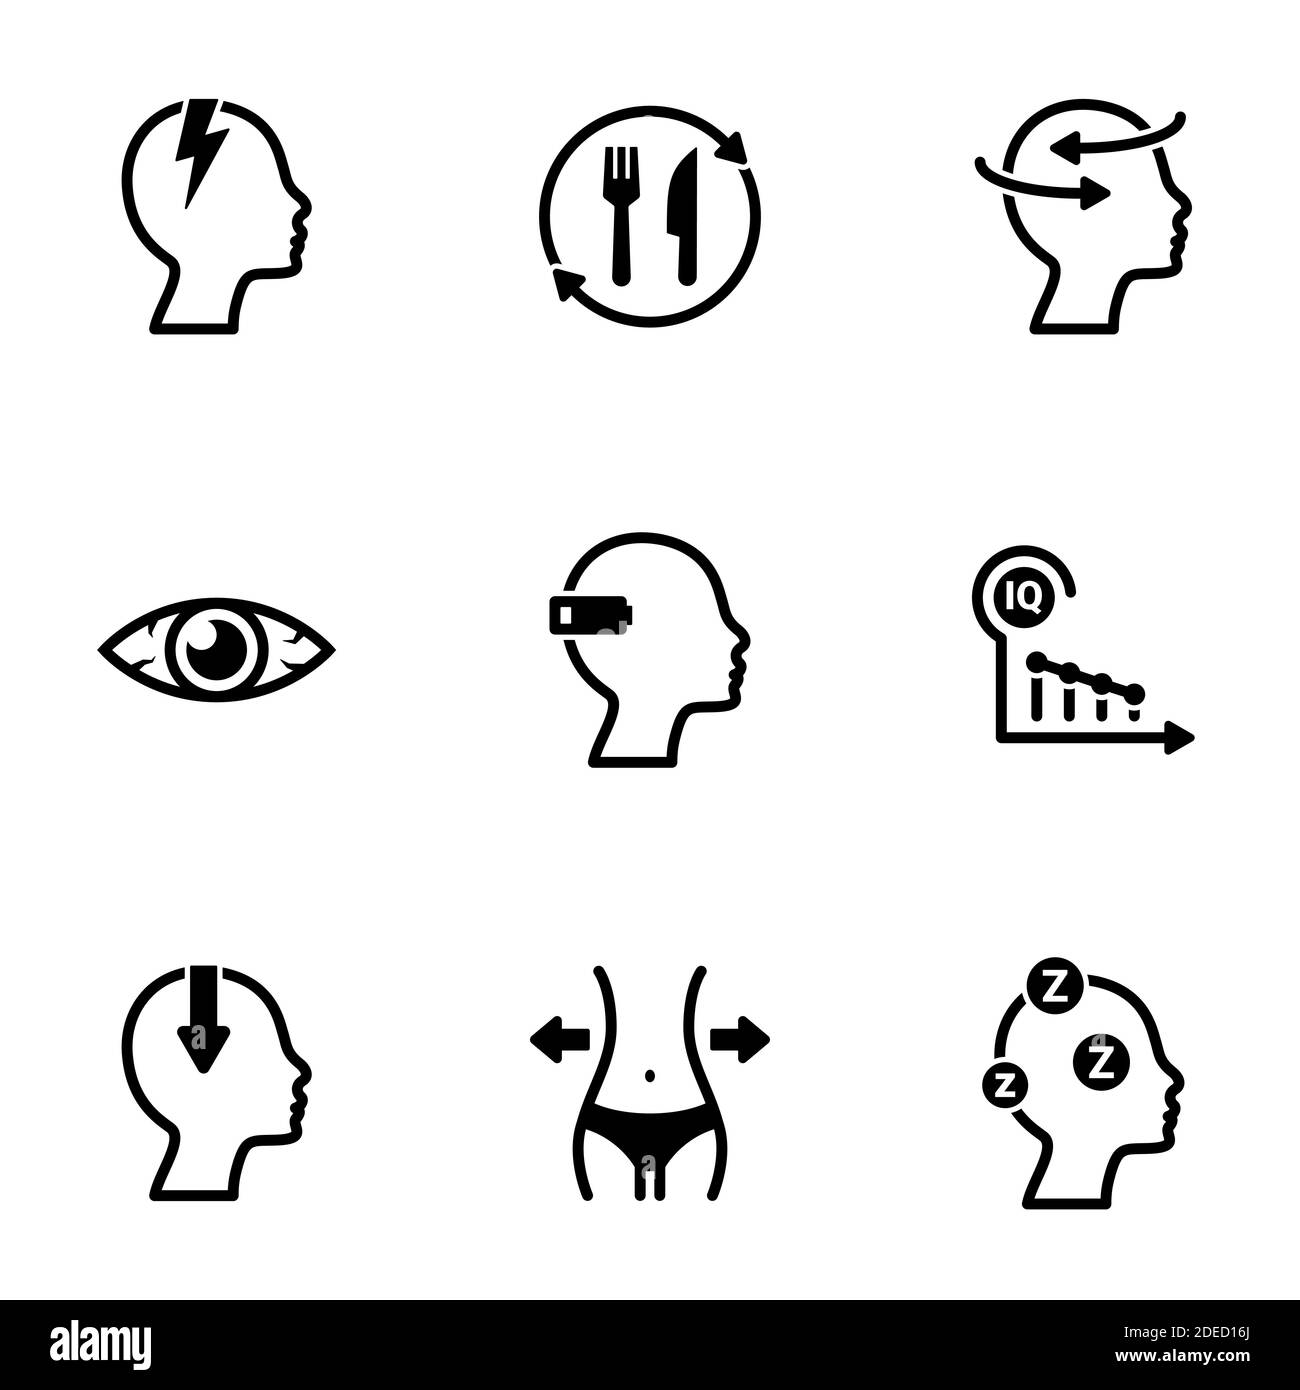 Insieme di icone semplici su un tema fatica, vettore, disegno, raccolta, piatto, segno, simbolo, elemento, oggetto, illustrazione, isolato. Sfondo bianco Illustrazione Vettoriale